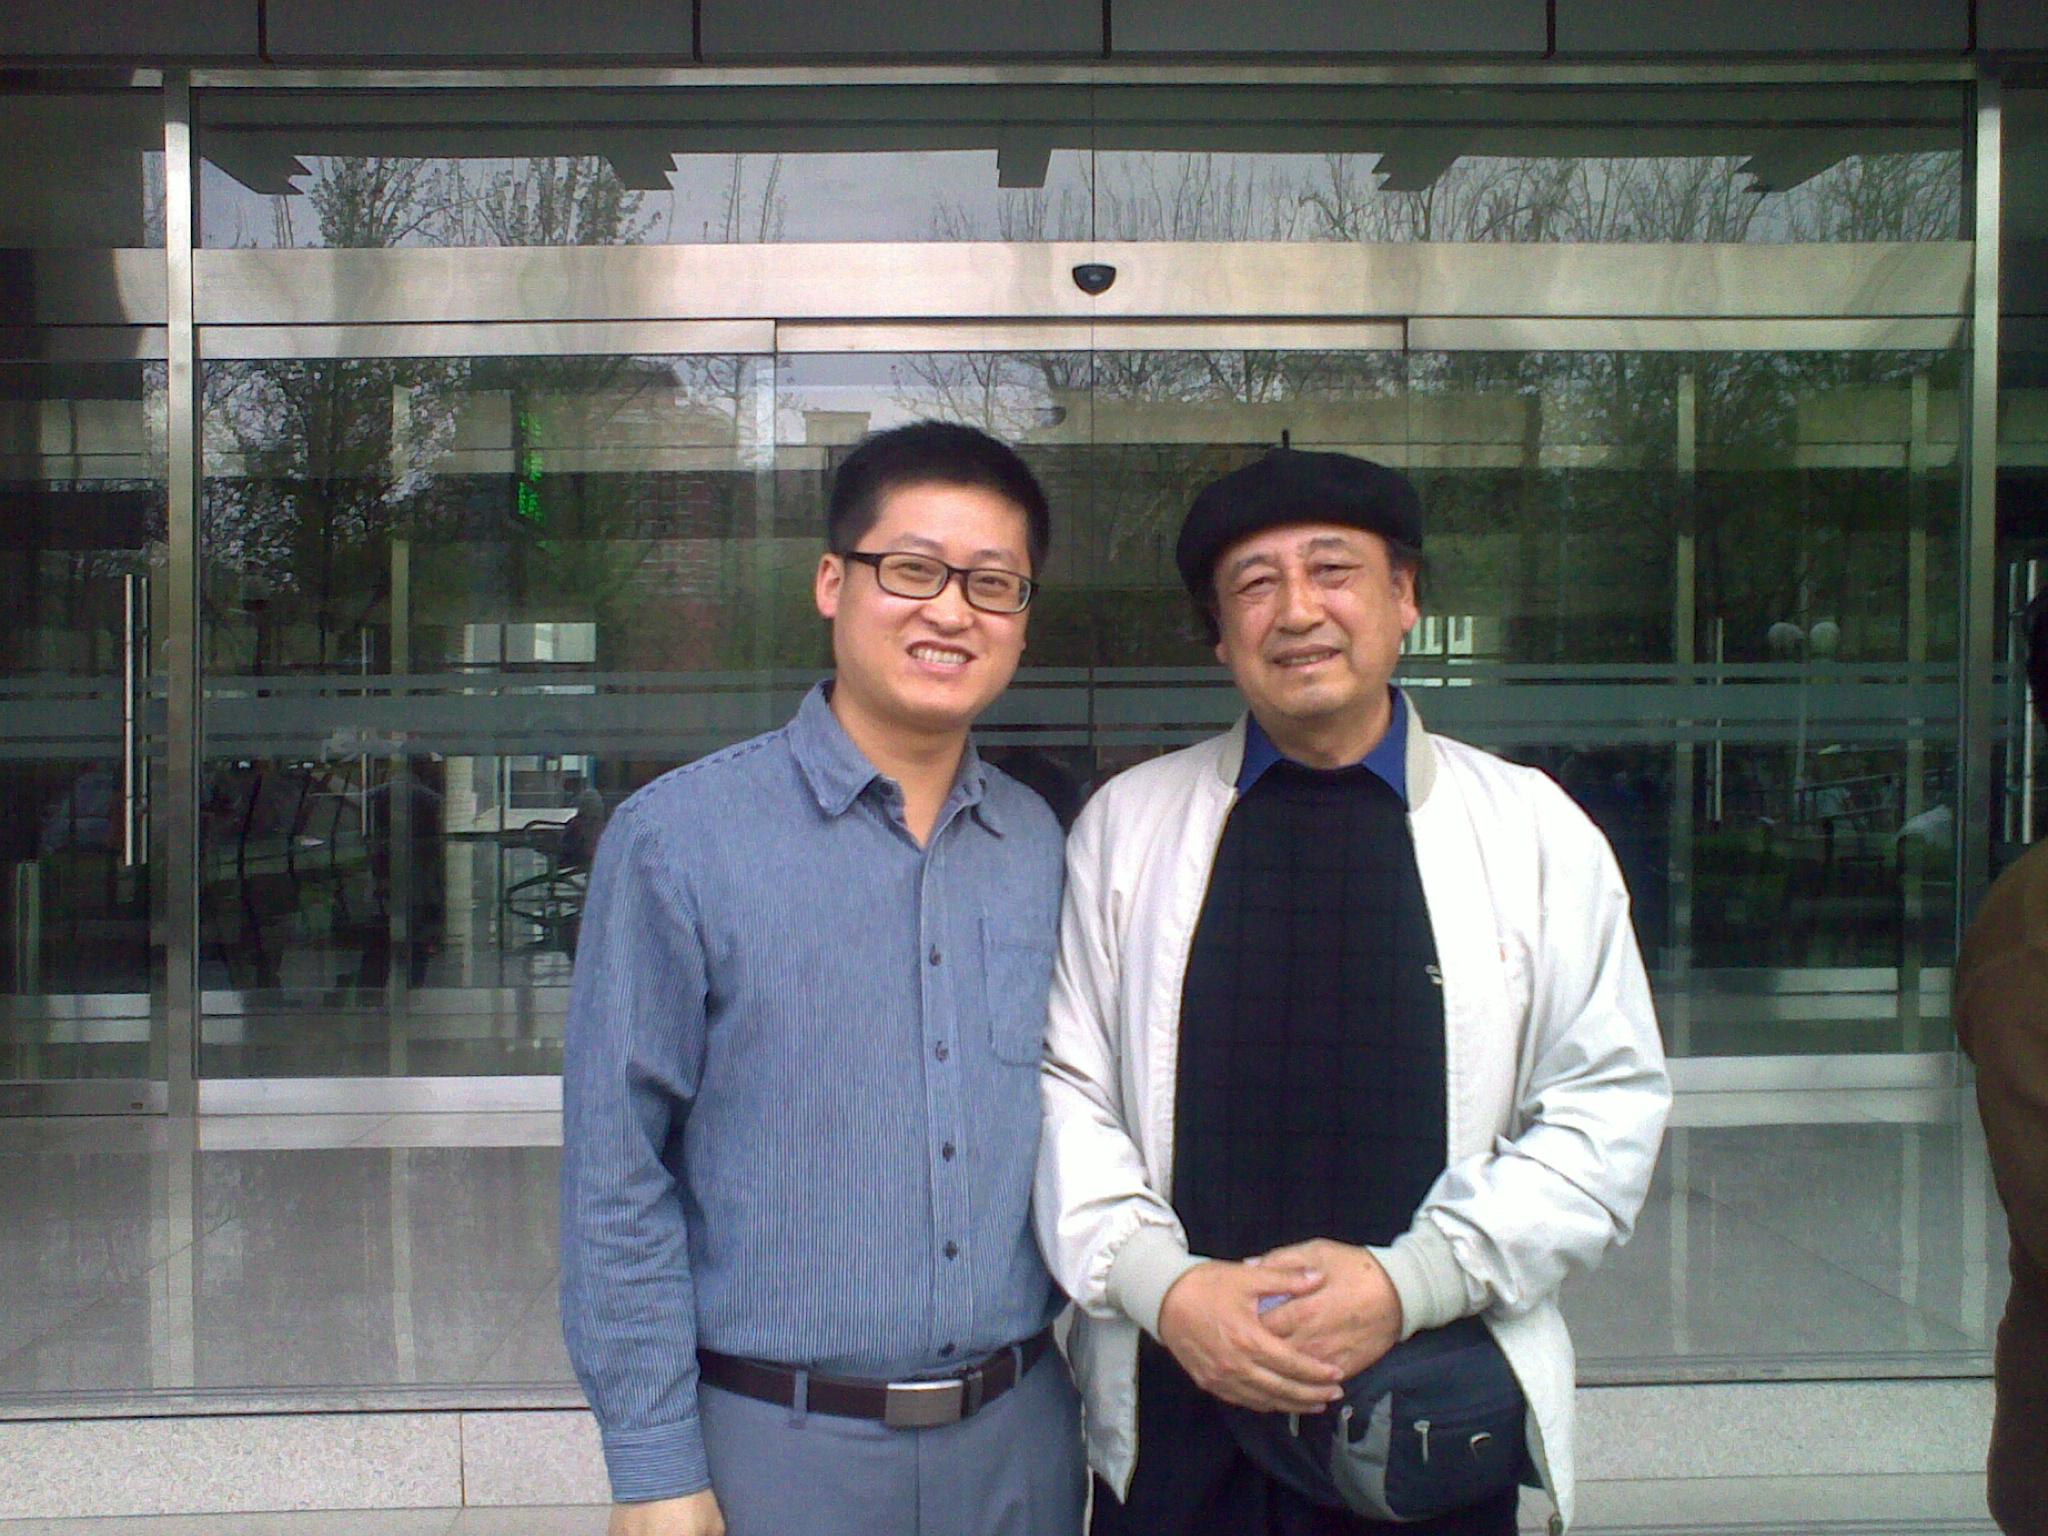 中国电影美术学会副会长祖绍先会见韩院长来访北京中科瀚林信息技术研究院